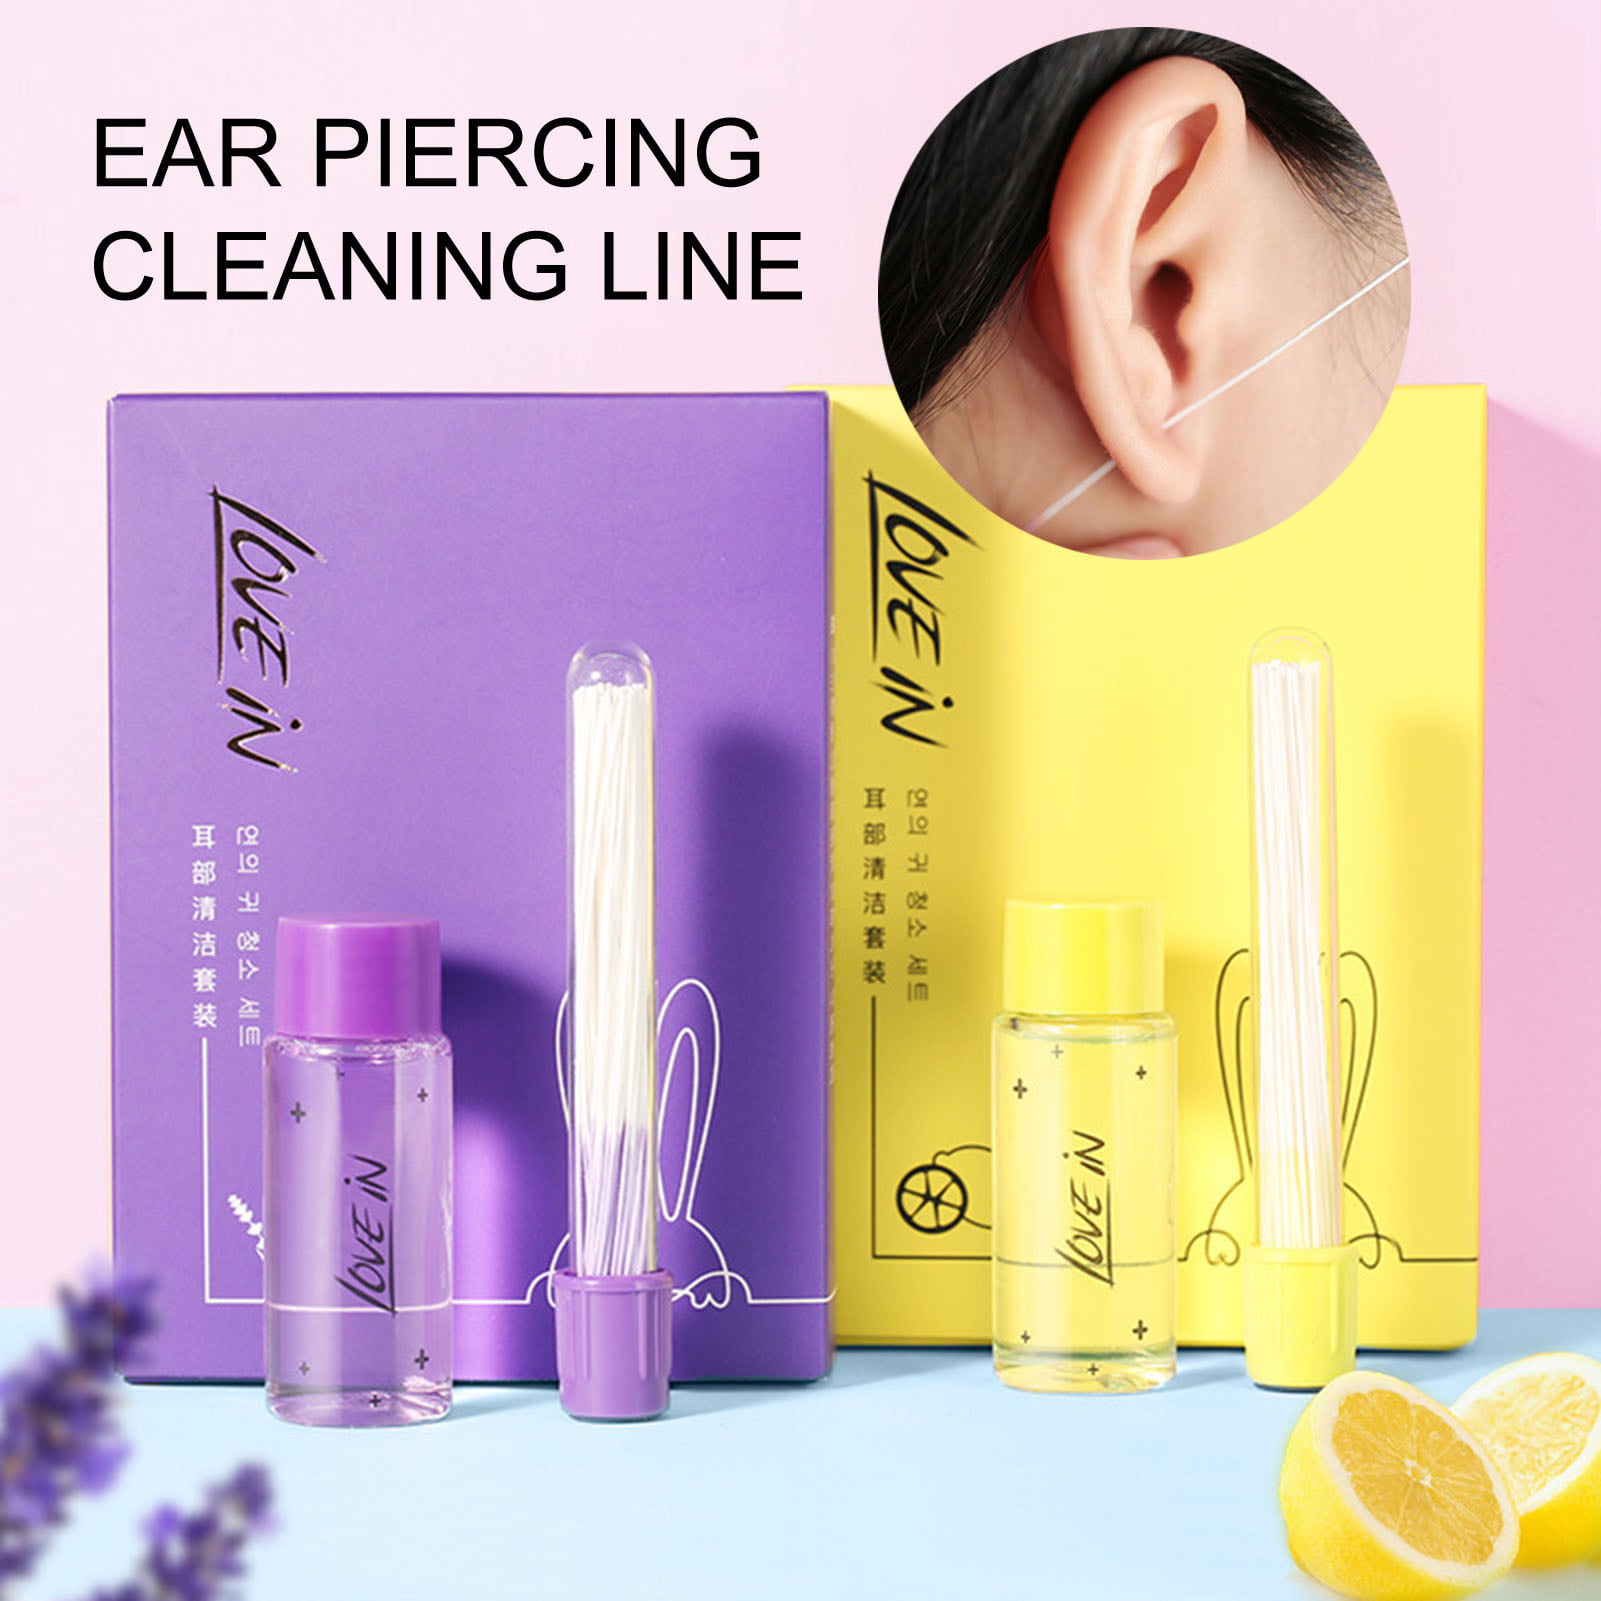  12 Sets Ear piercing cleaning line ear piercing